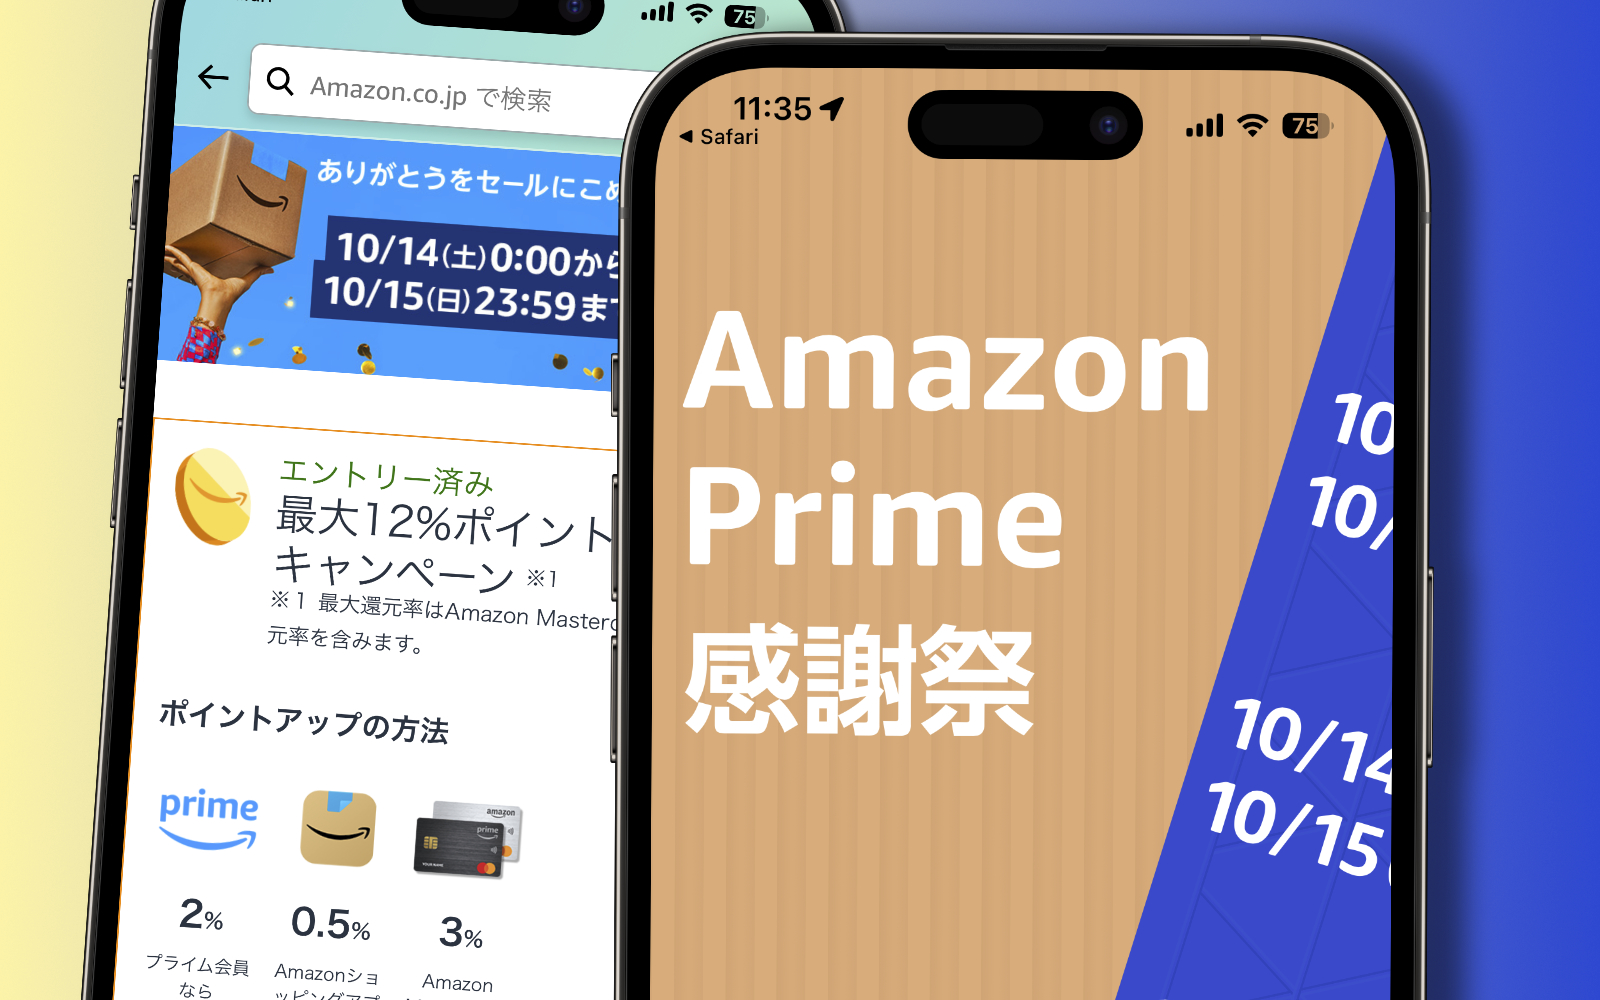 Amazon-Prime-Thanks-Event.jpg